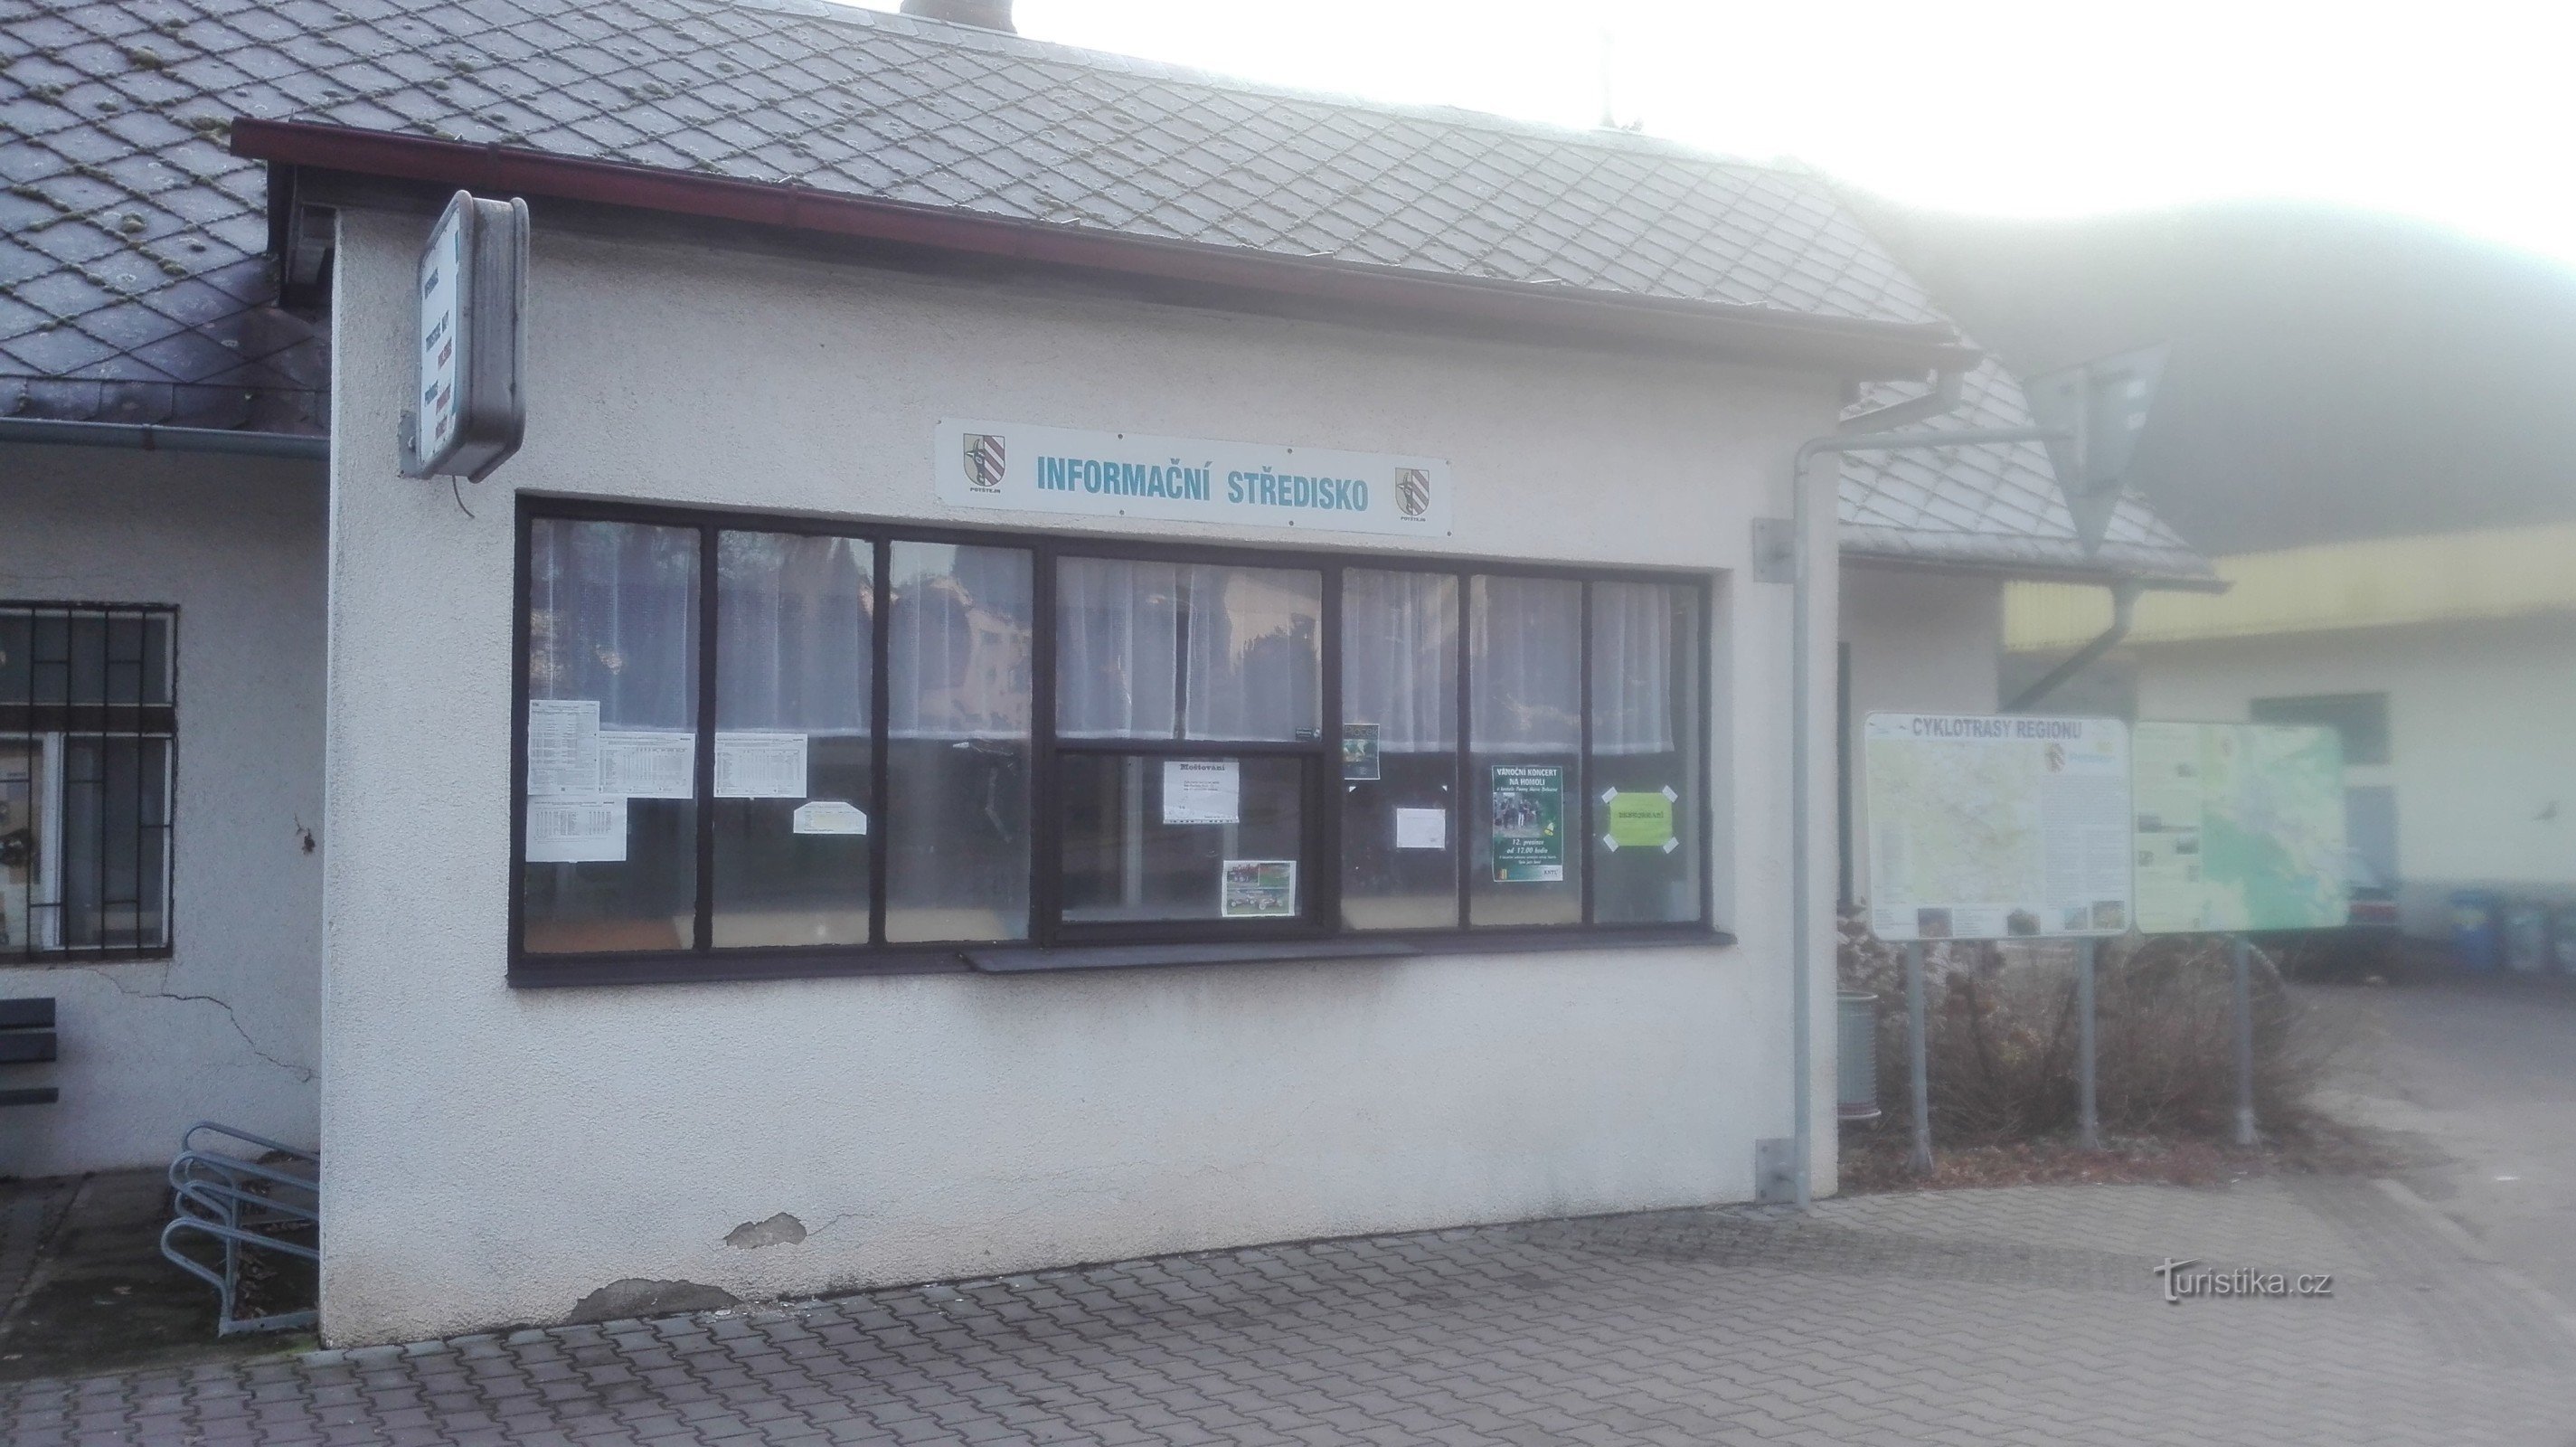 Potštejn - centro de información